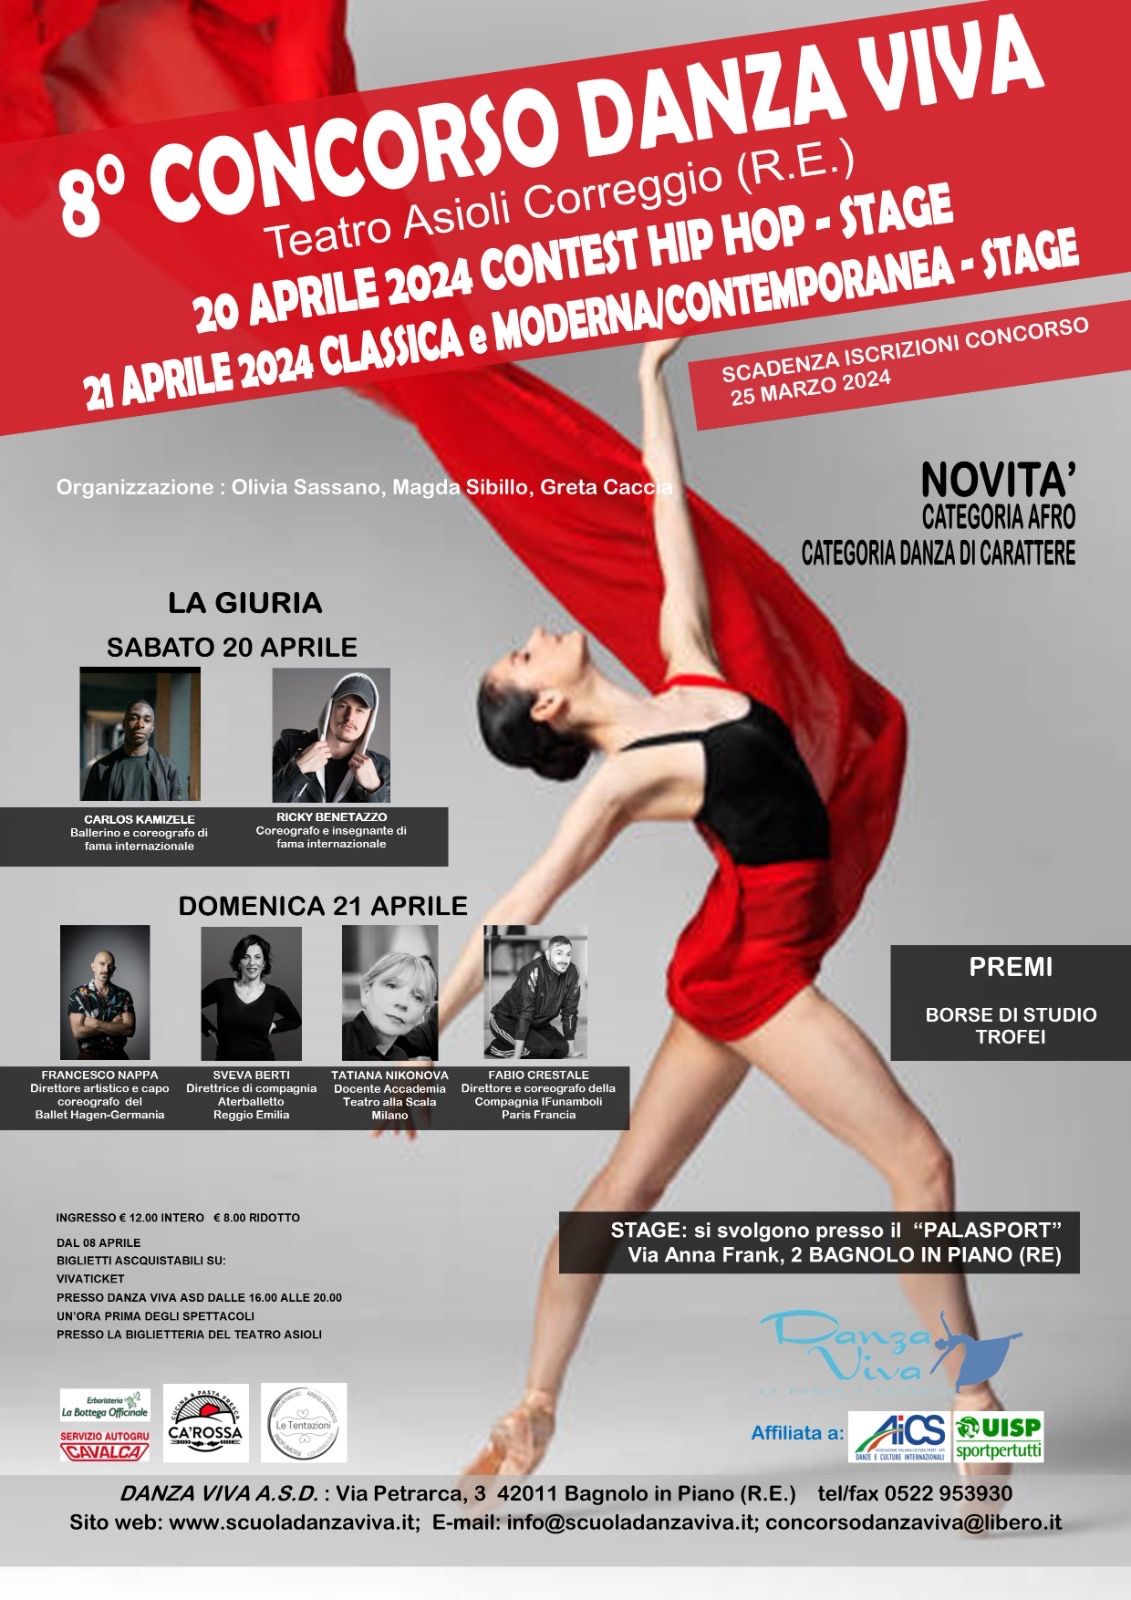 Organizziamo l'8° Concorso Danza Viva il 20 e il 21 Aprile 2024 presso il Teatro Asioli di Correggio (RE).  Il 20 Aprile 2024 presso il Palasport di Bagnolo in Piano (RE) si svolgeranno gli stage di hip hop con Ricky Benetazzo (coreografo e insegnate 